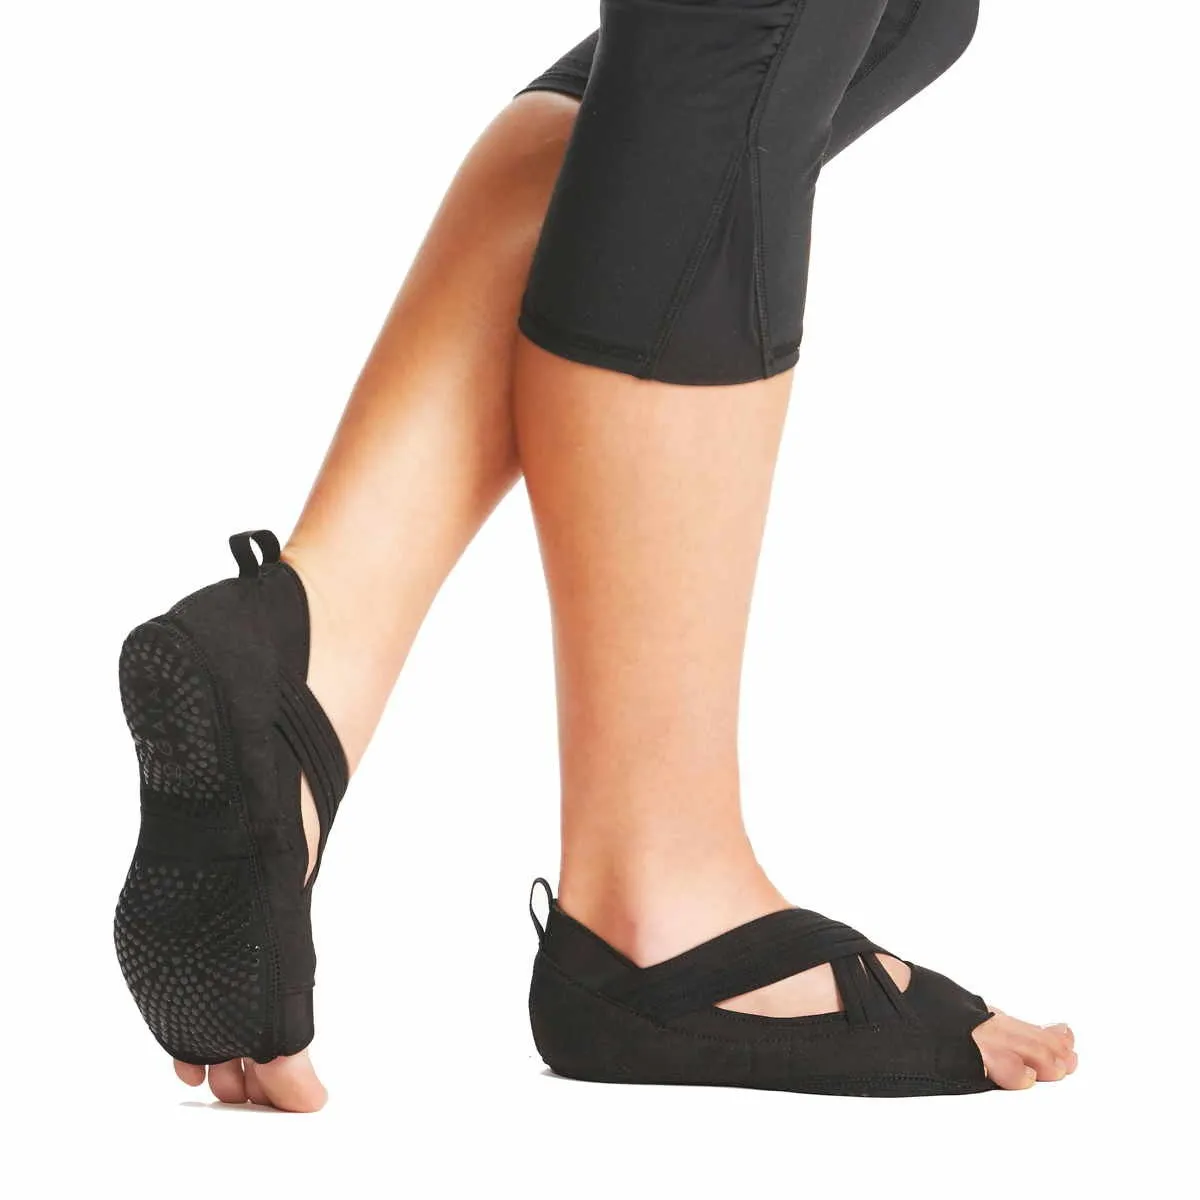 GAIAM rutschfeste Yoga Socken im Schuhdesign schwarz